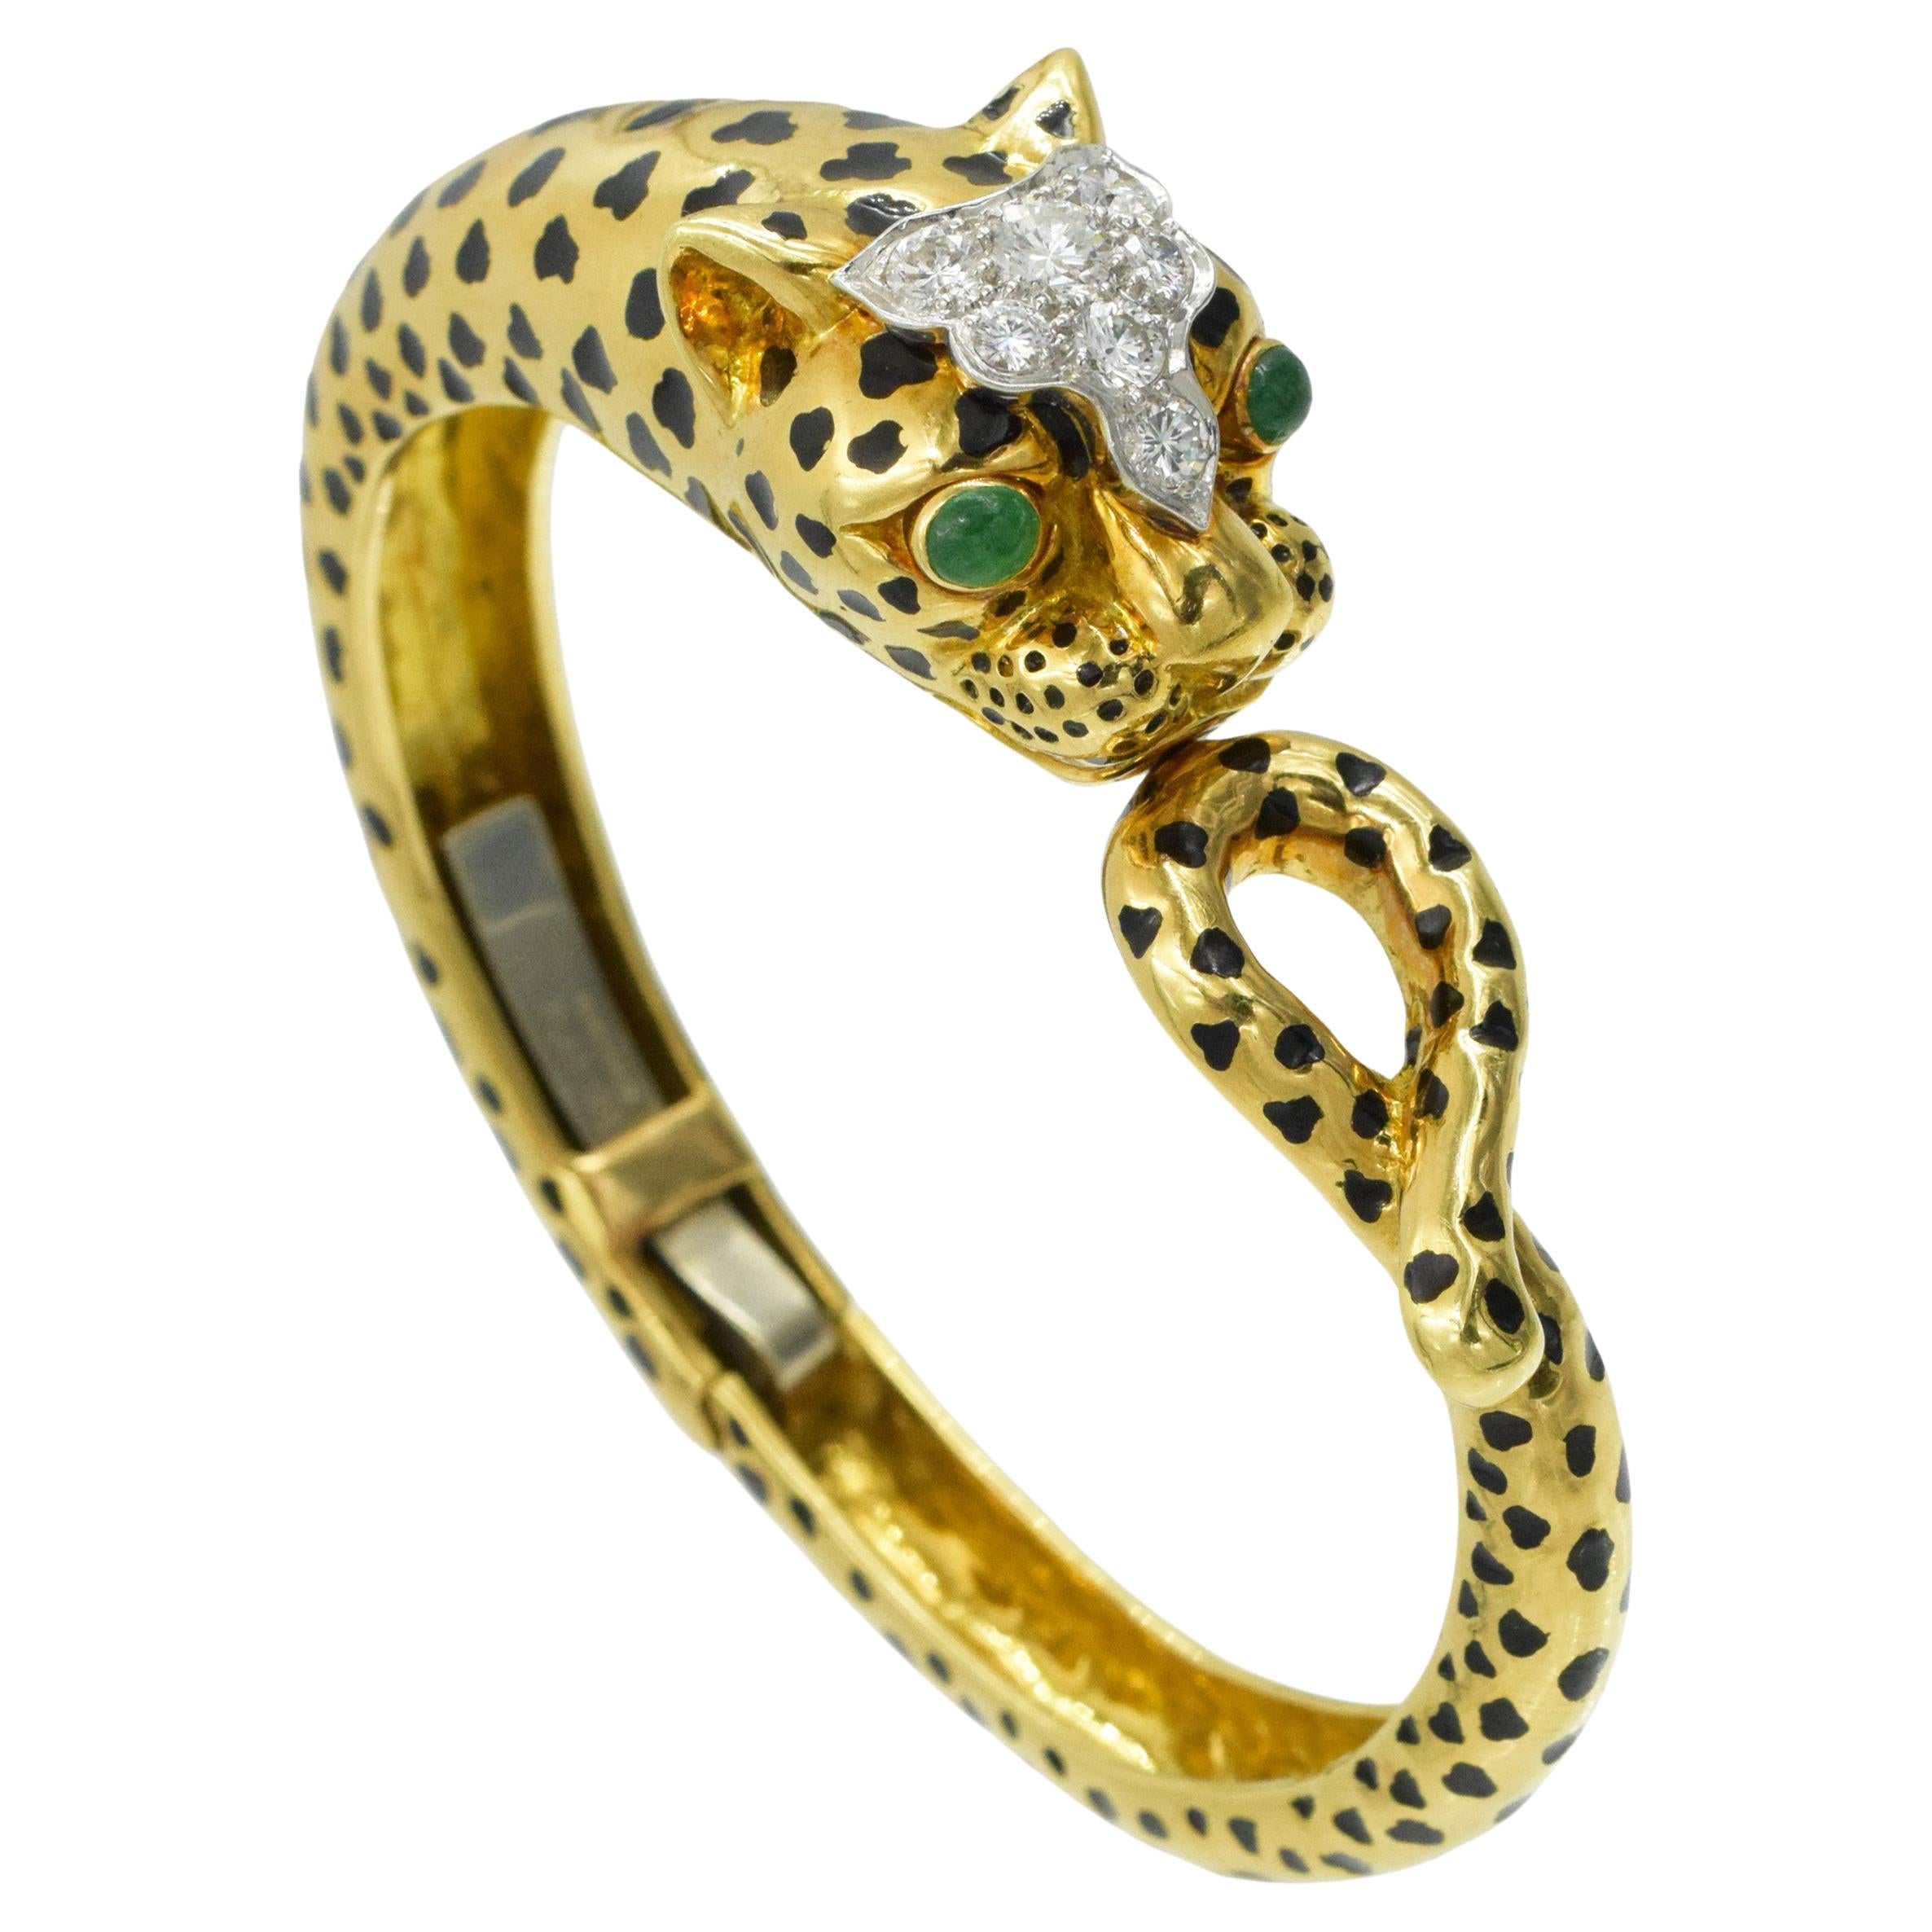 Leopardenarmband von David Webb mit Diamanten, Smaragden und schwarzer Emaille